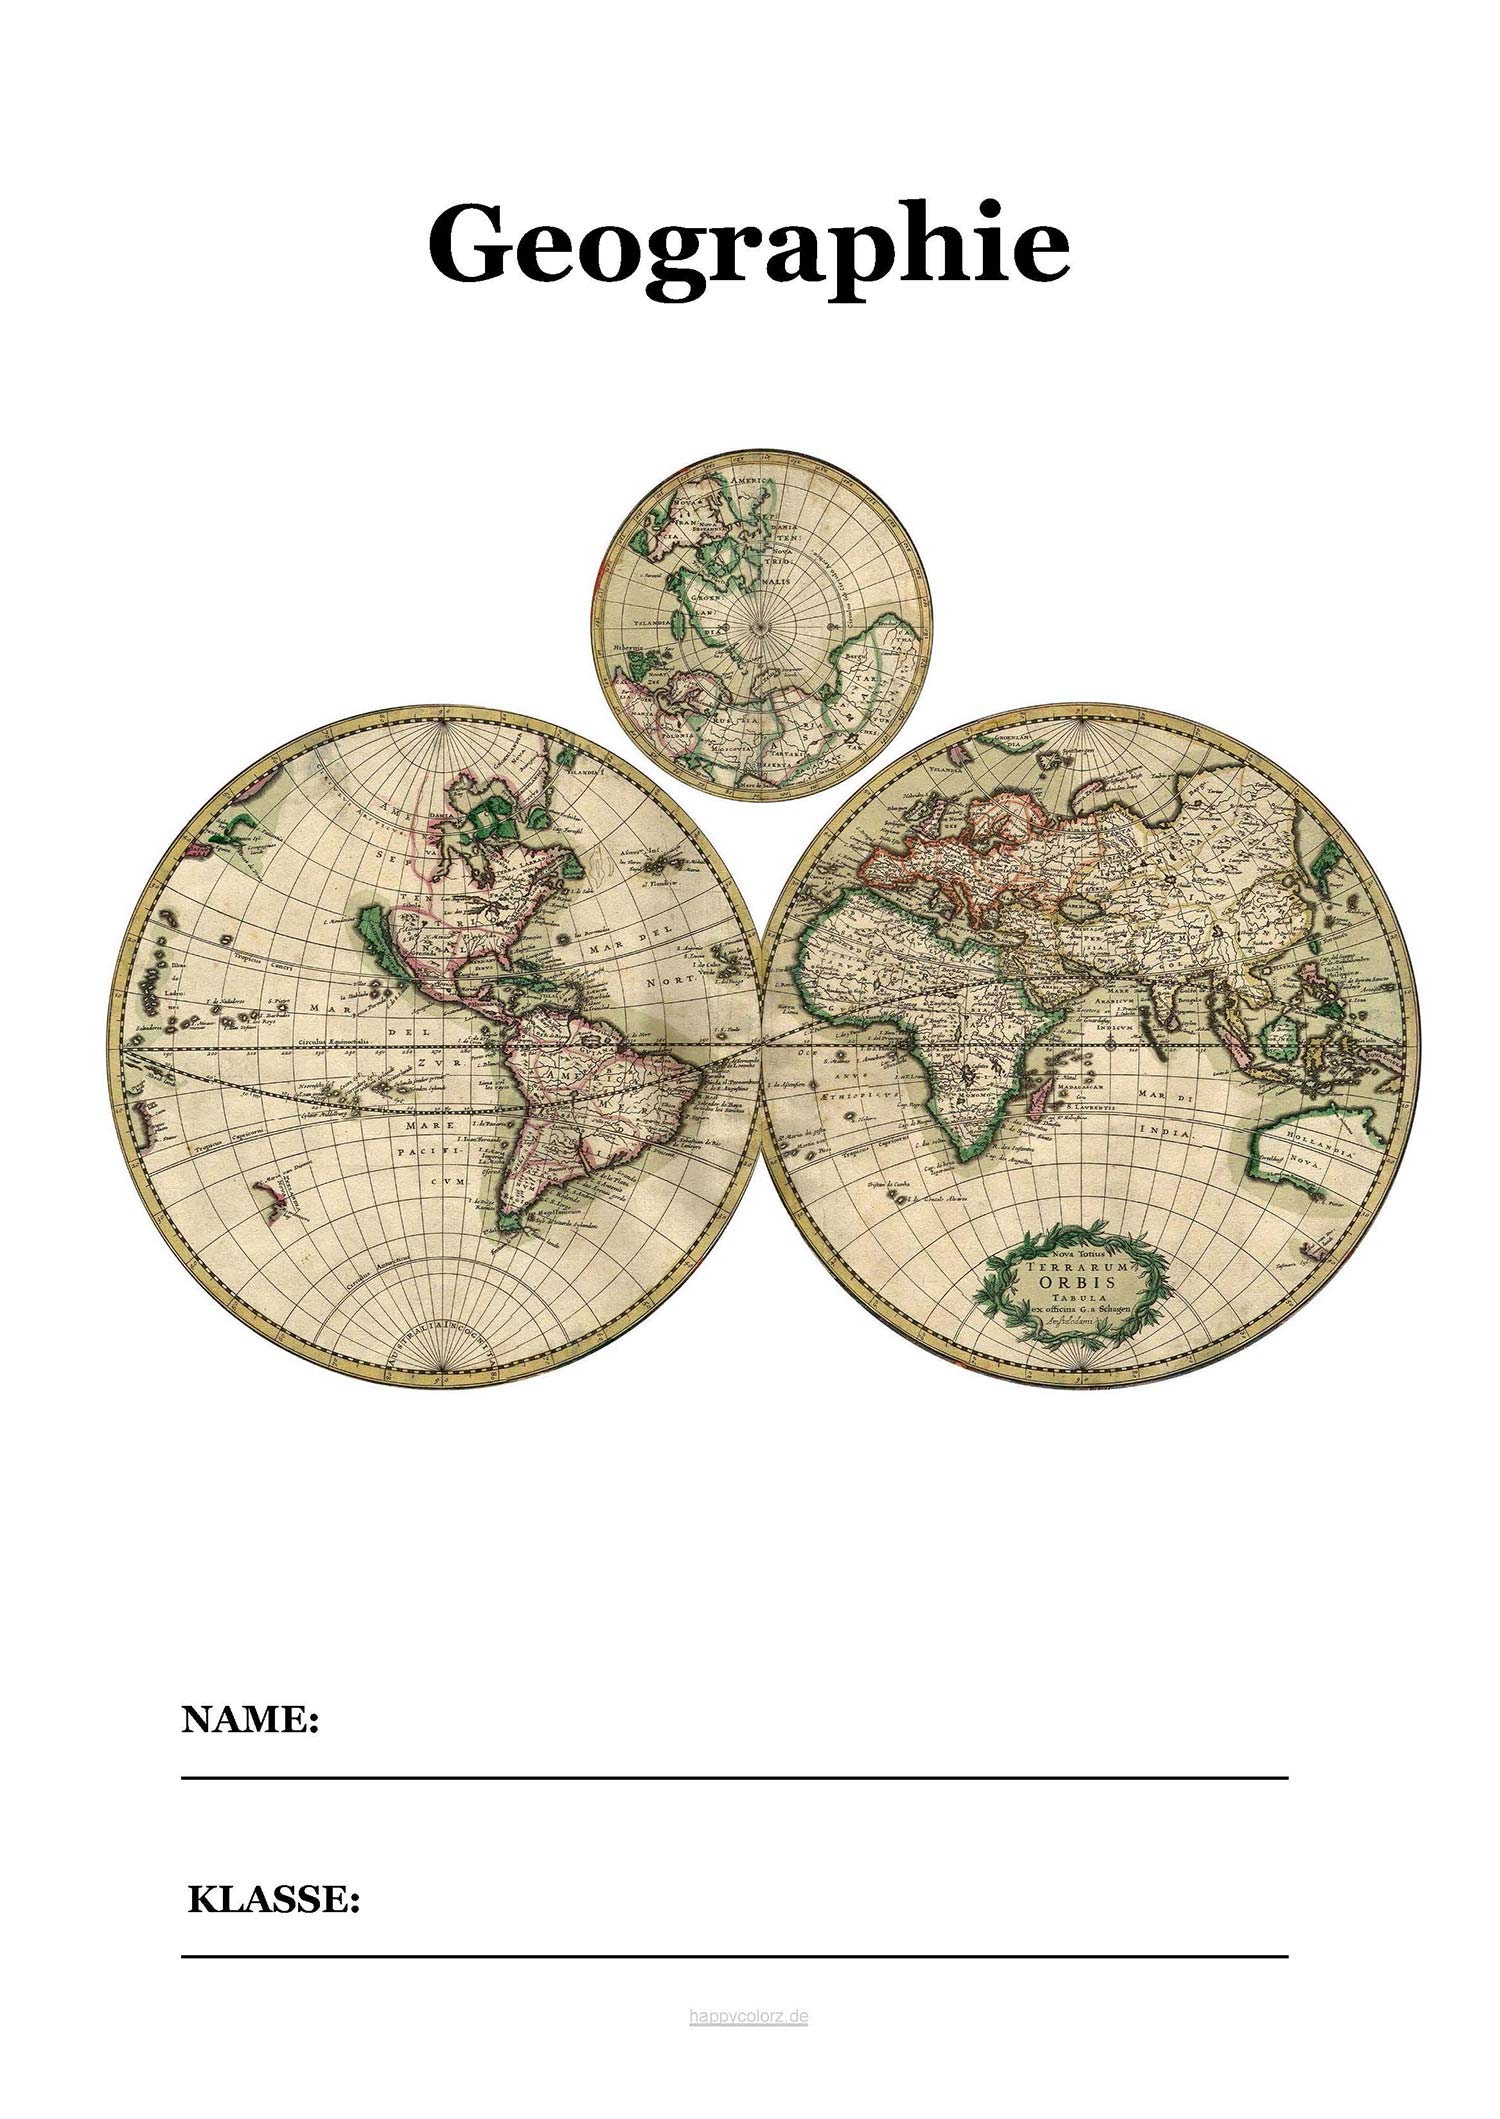 Geographie Deckblatt mit historischer Landkarte zum kostenlosen ausdrucken (pdf)